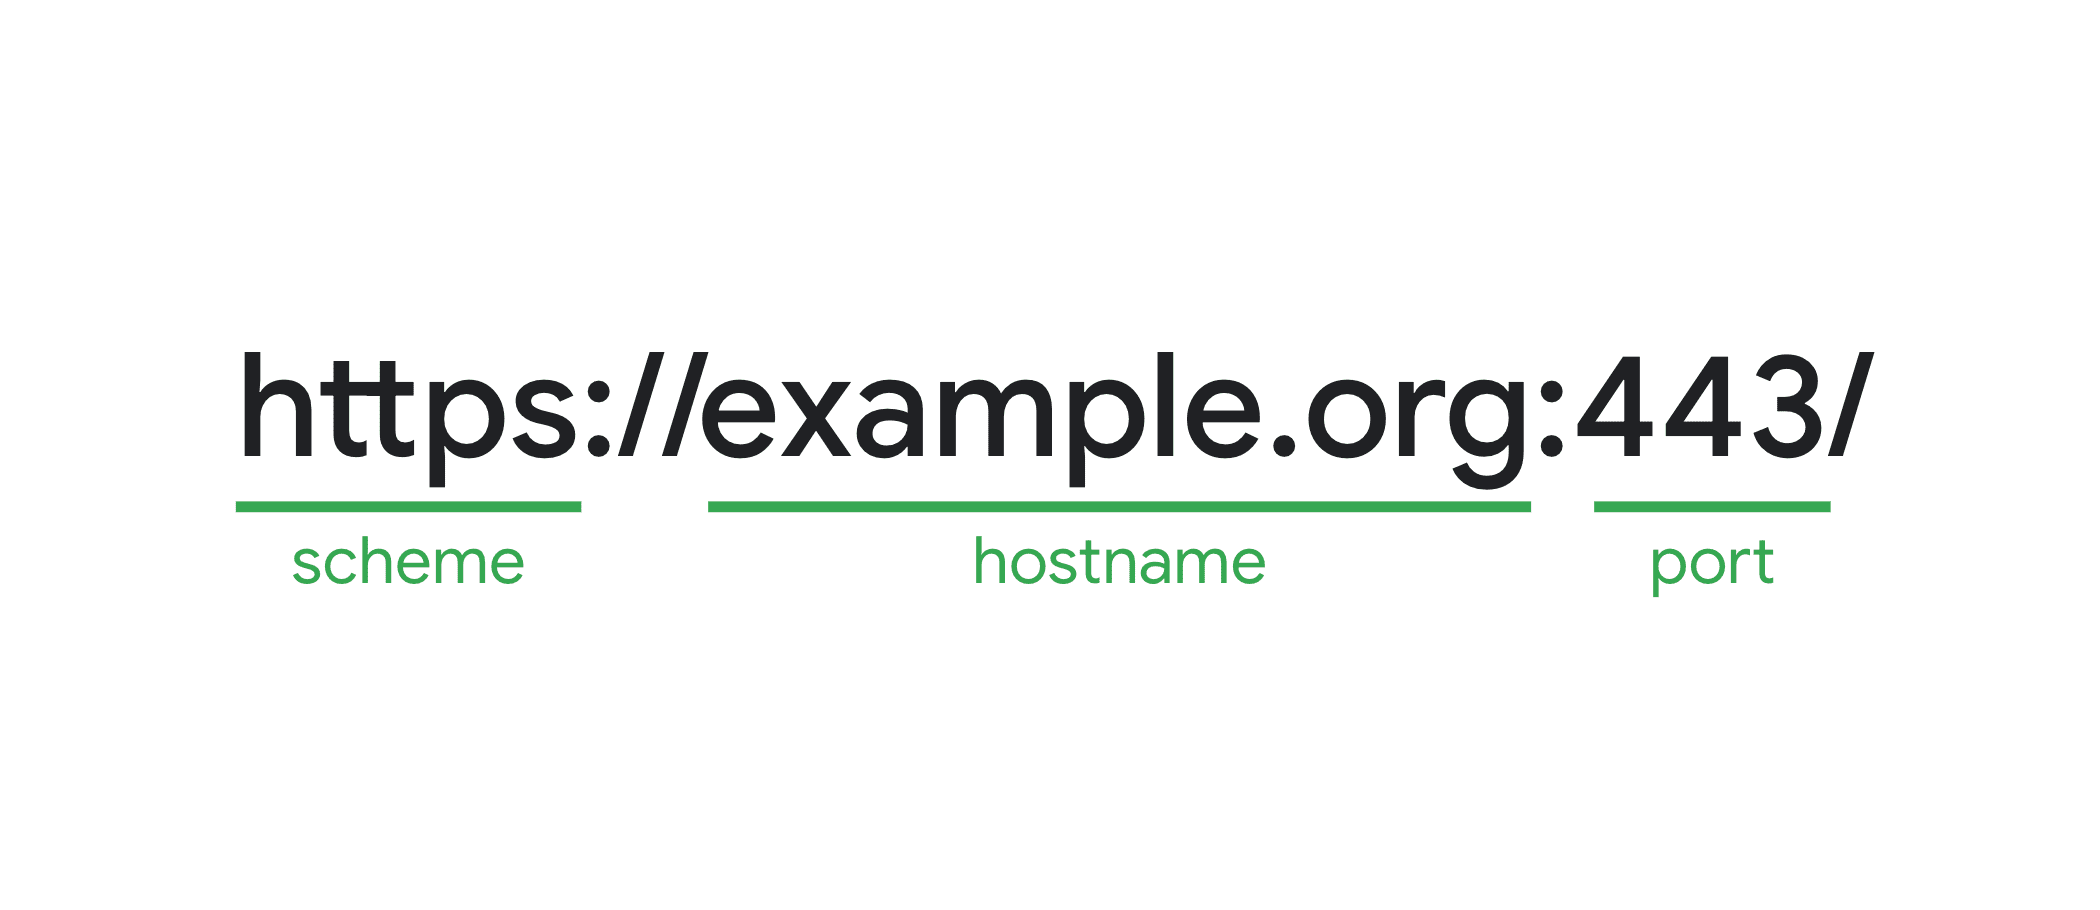 مثال على عنوان URL مع تمييز المخطط واسم المضيف والمنفذ وكلاهما يشكِّلان المنشأ.